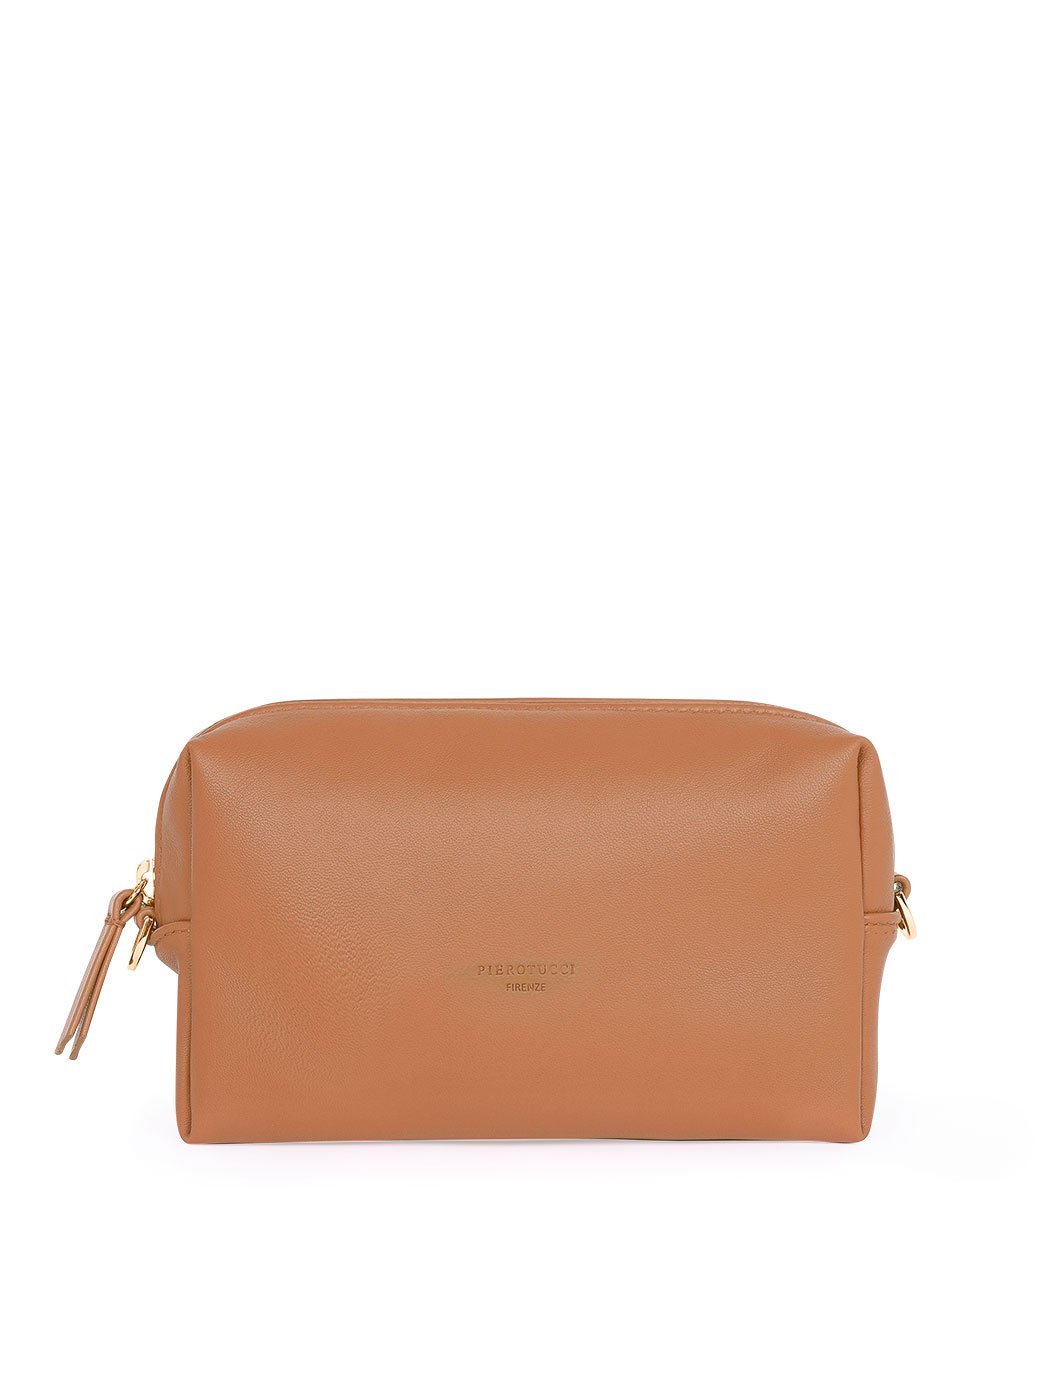 Прямоугольная сумочка с регулируемым ремнем коричневого цвета